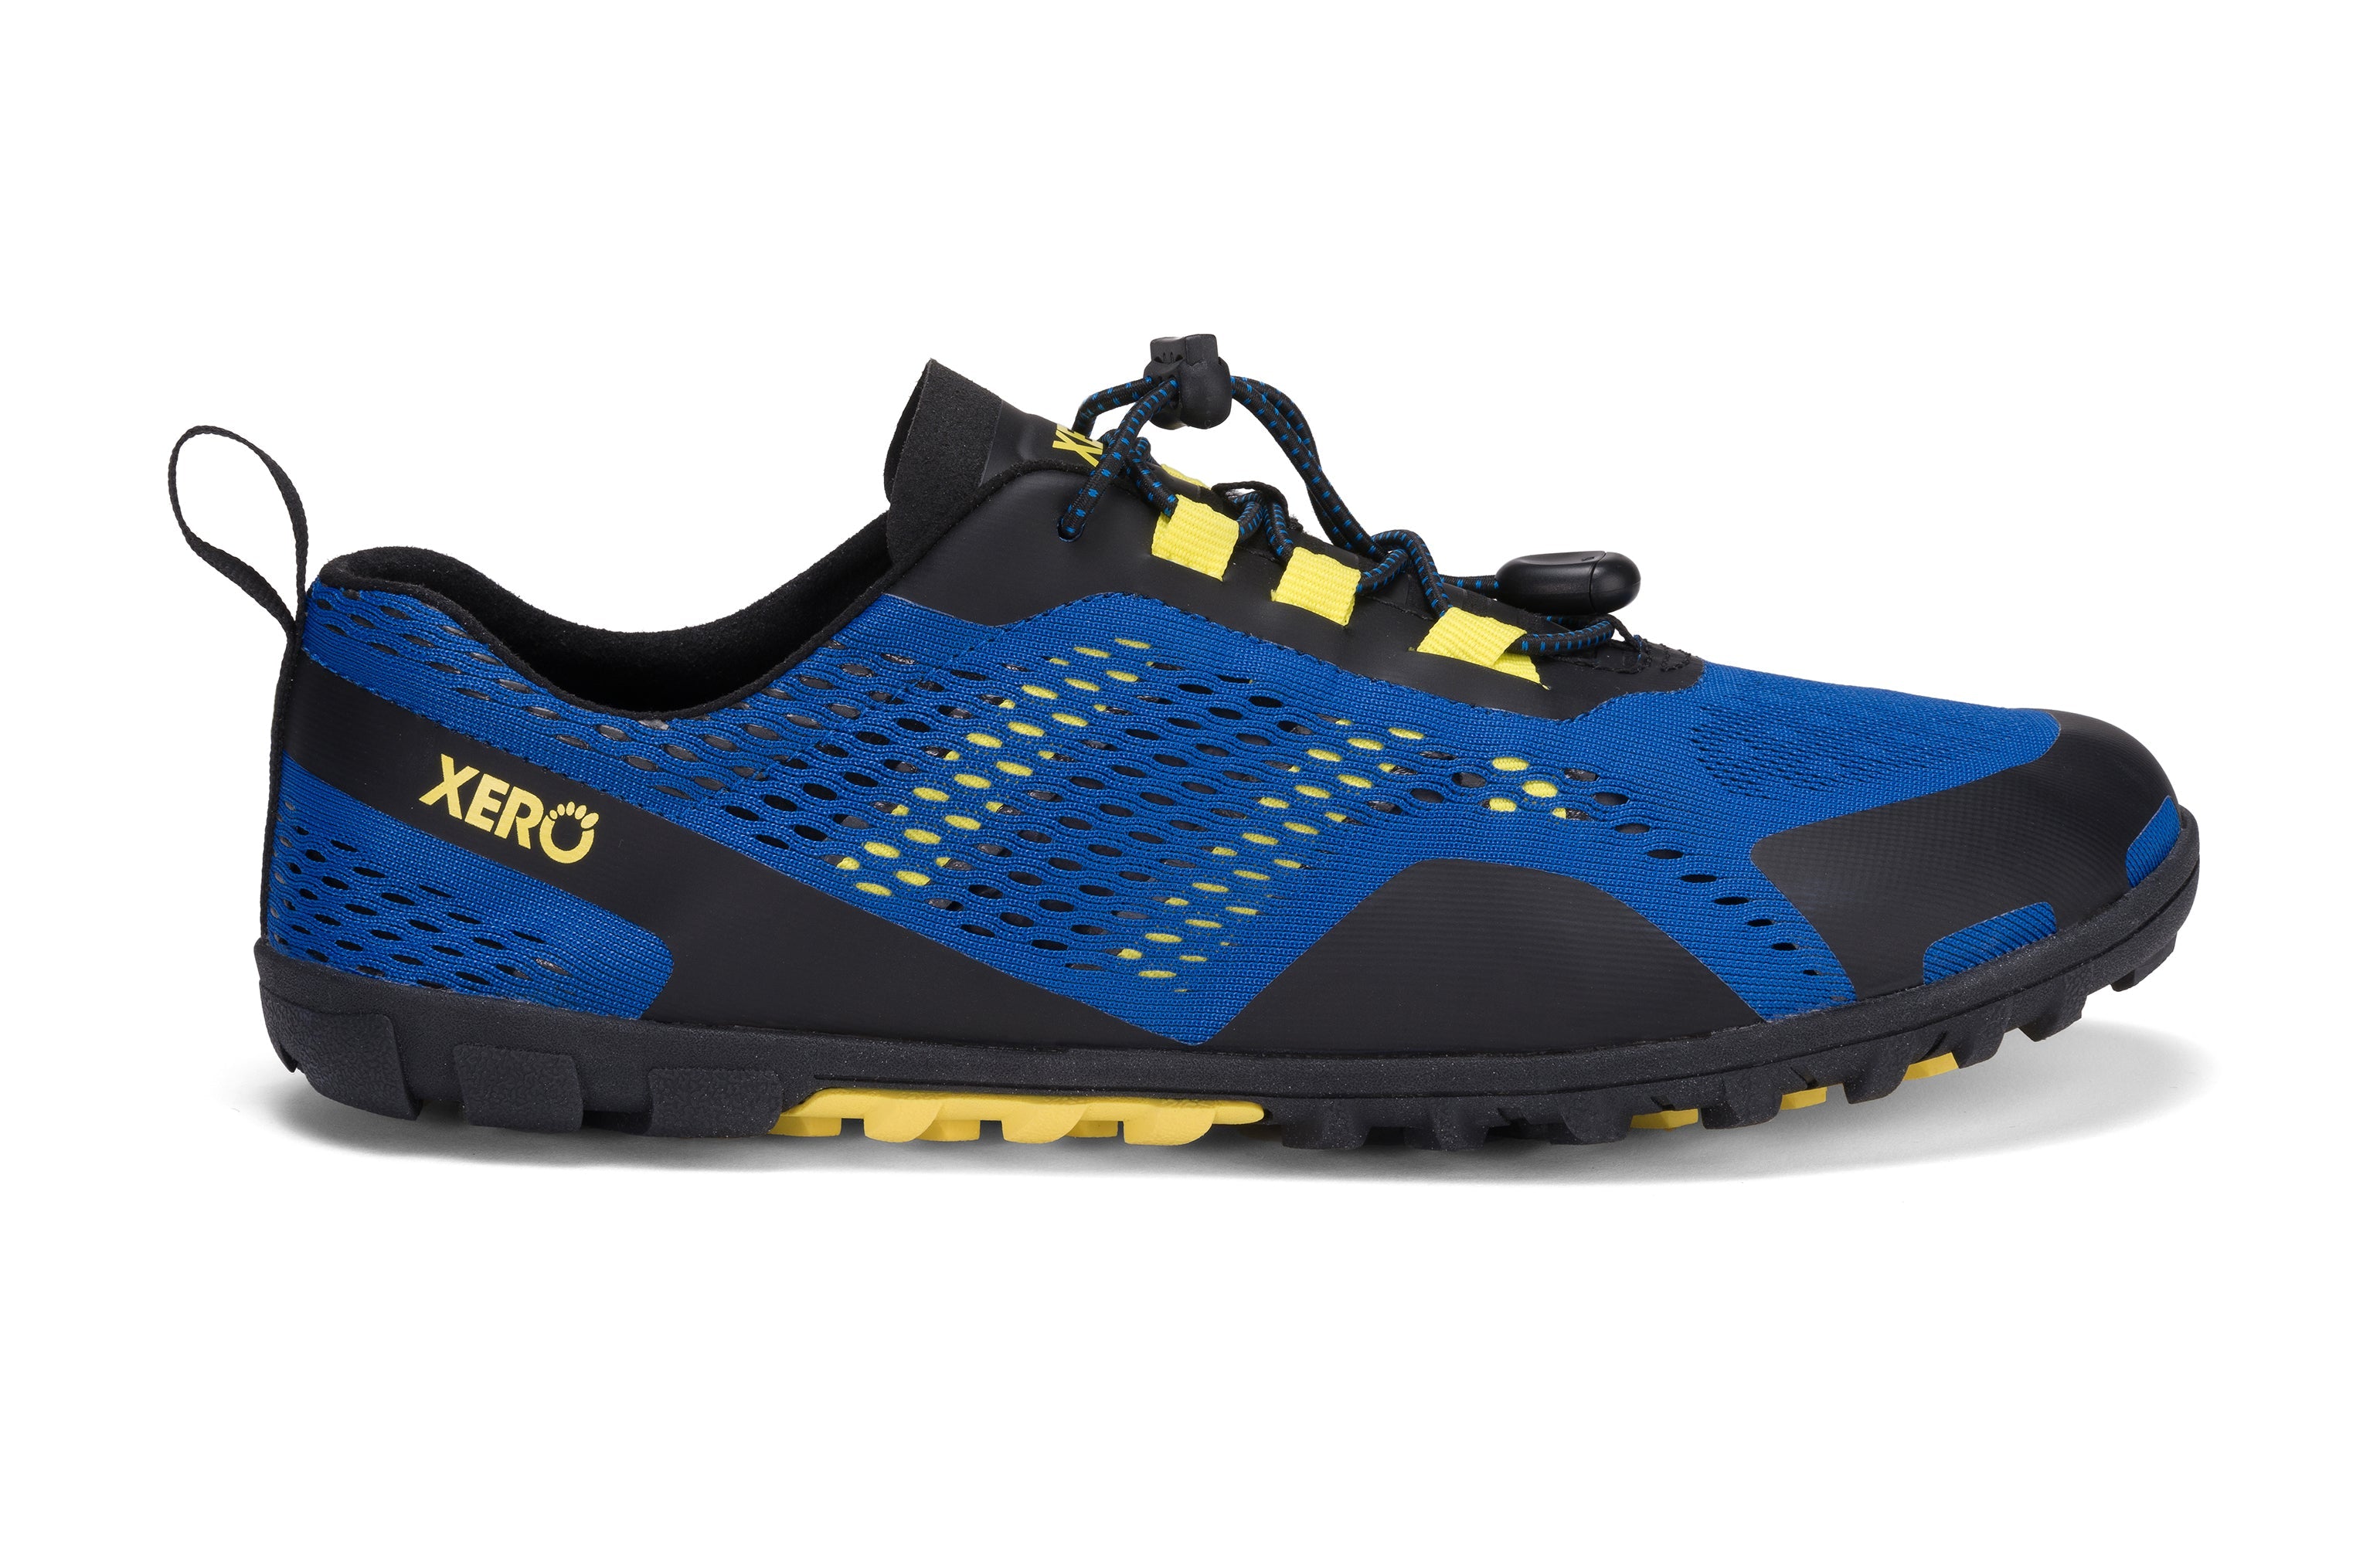 Xero Shoes Aqua X Sport barfods vand træningssko til mænd i farven blue / yellow, yderside